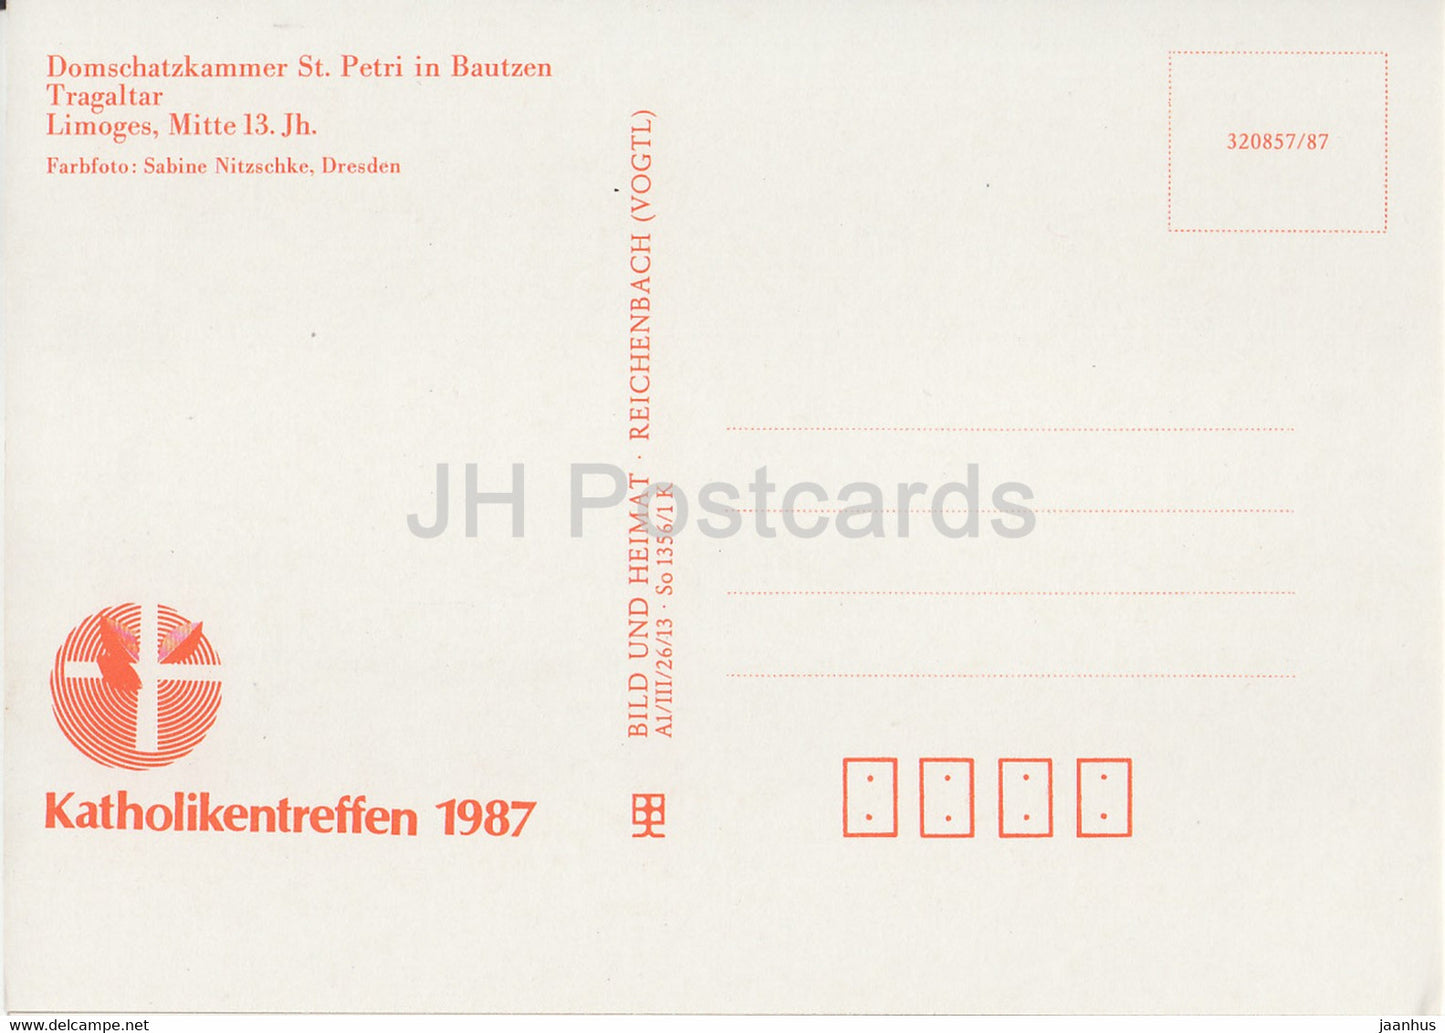 Tragaltar - Domschatzkammer St. Petri in Bautzen - 1987 - DDR Deutschland - unbenutzt